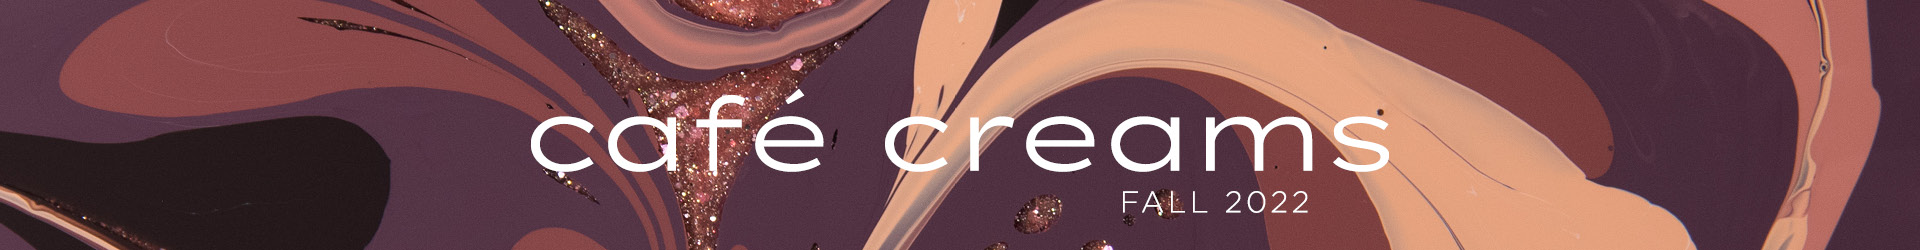 CafÃƒÂ© Creams - Coming Soon